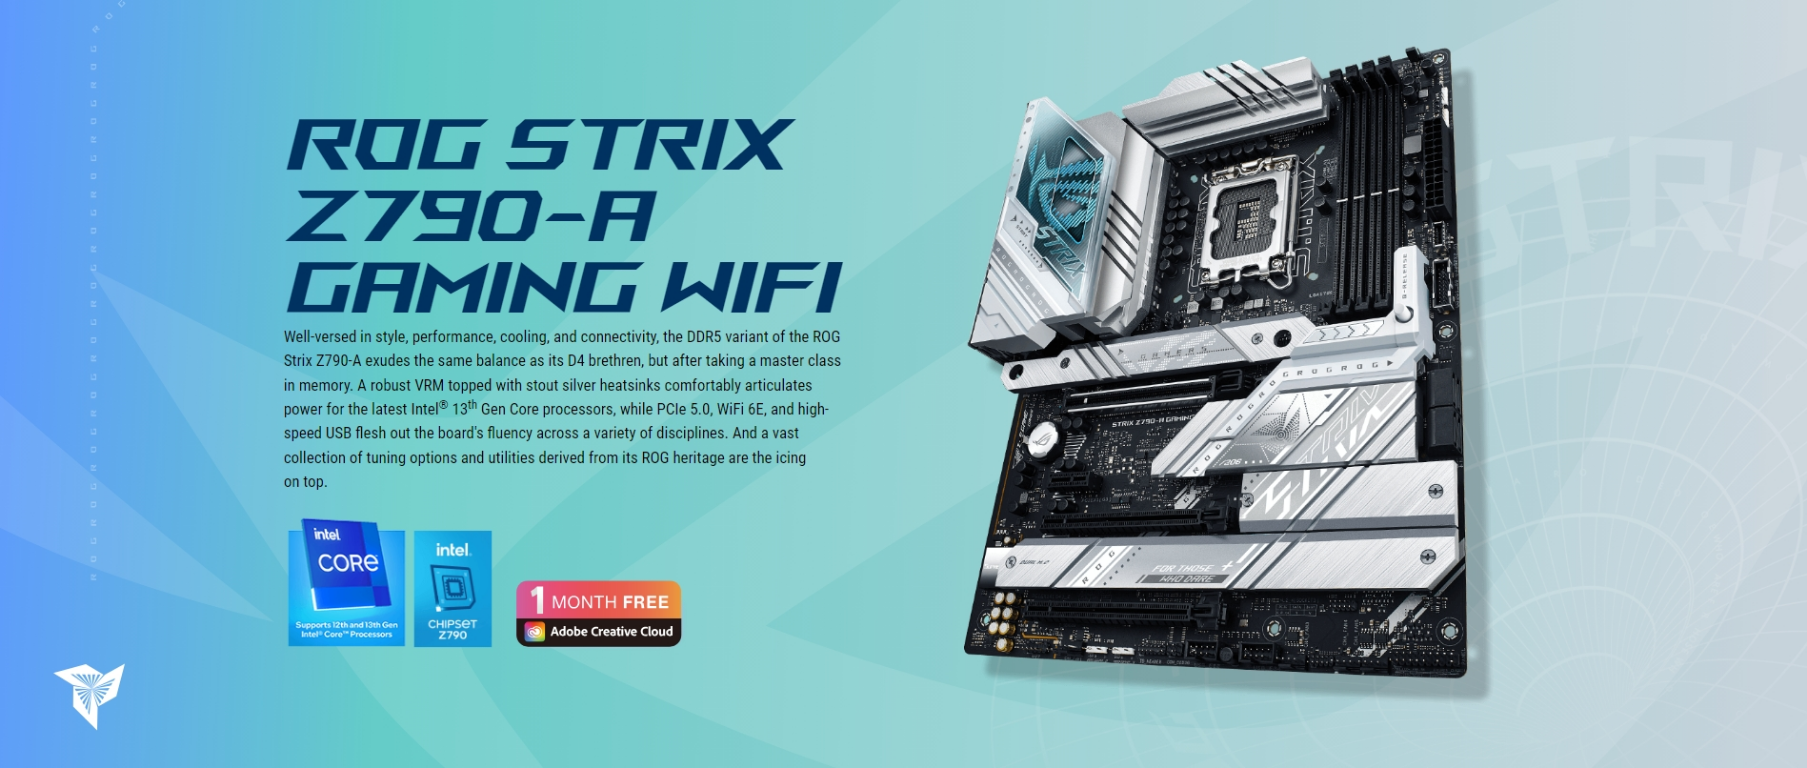 ASUS-ROG-Strix-Z790-A-Gaming-DDR5-ATX-LGA-1700-Motherboard